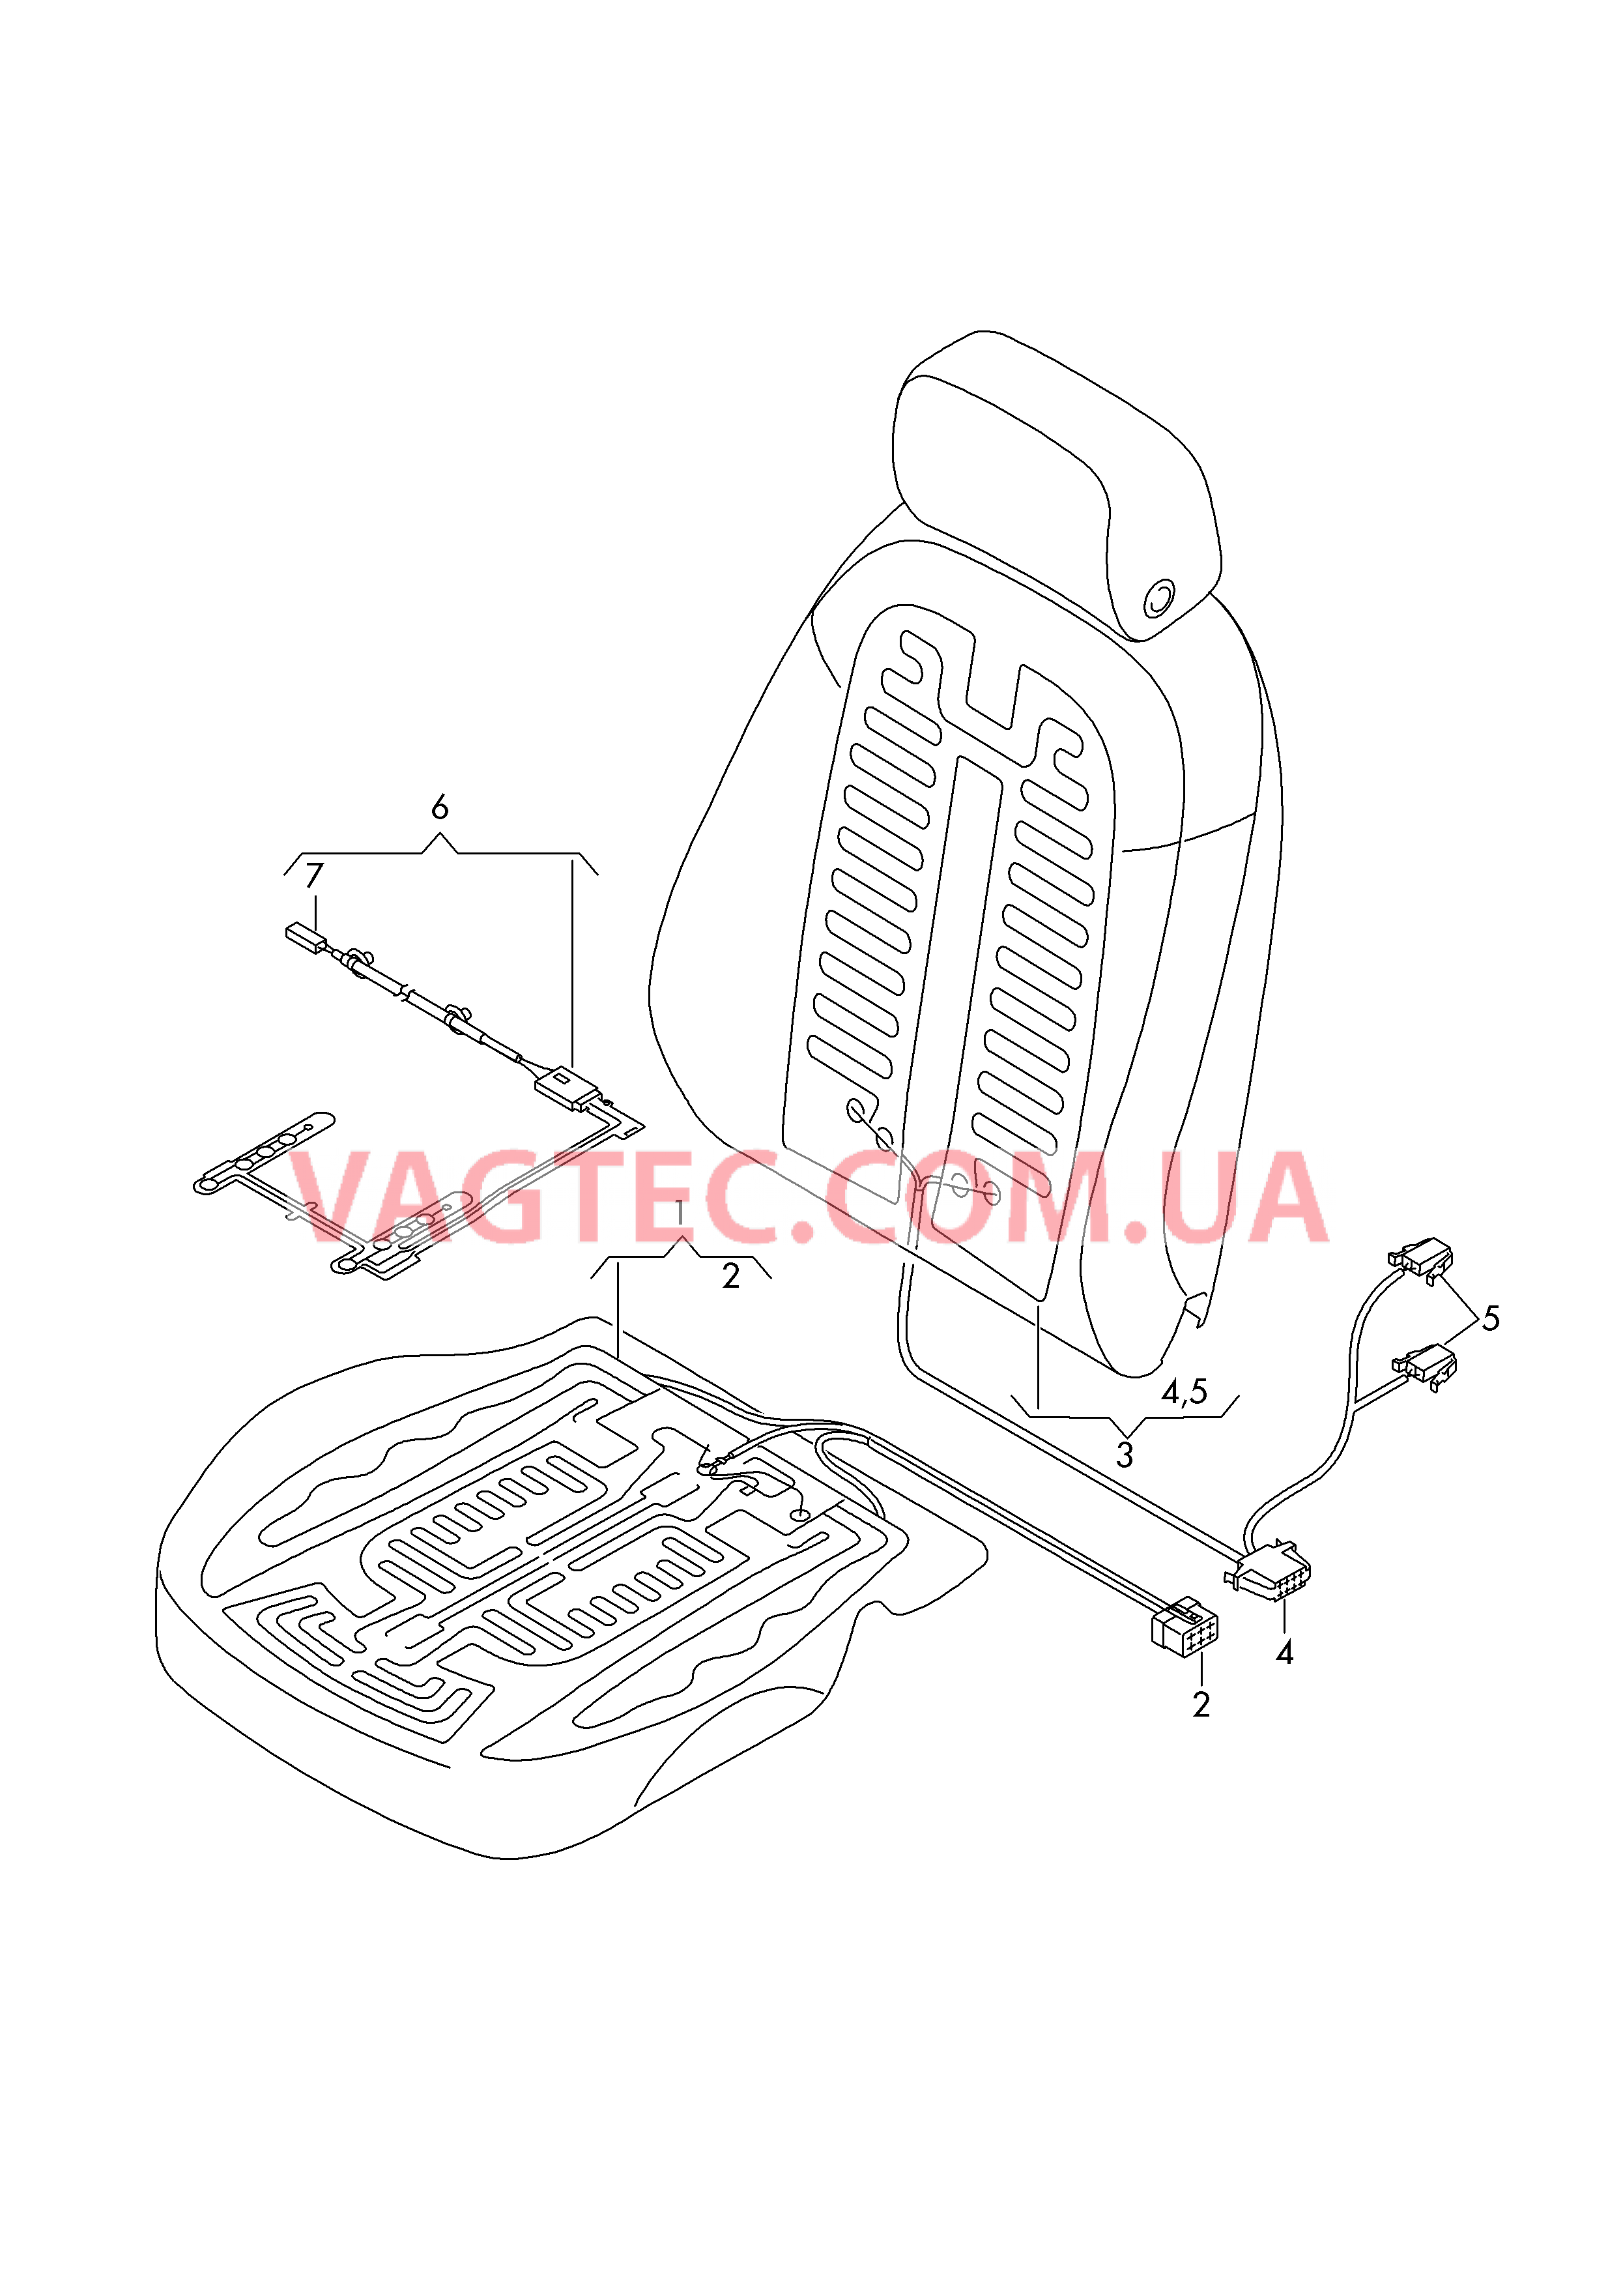 Нагревательный элемент спинки и подушки сиденья  Вставка распознавания занятости сиденья  для AUDI A6 2017